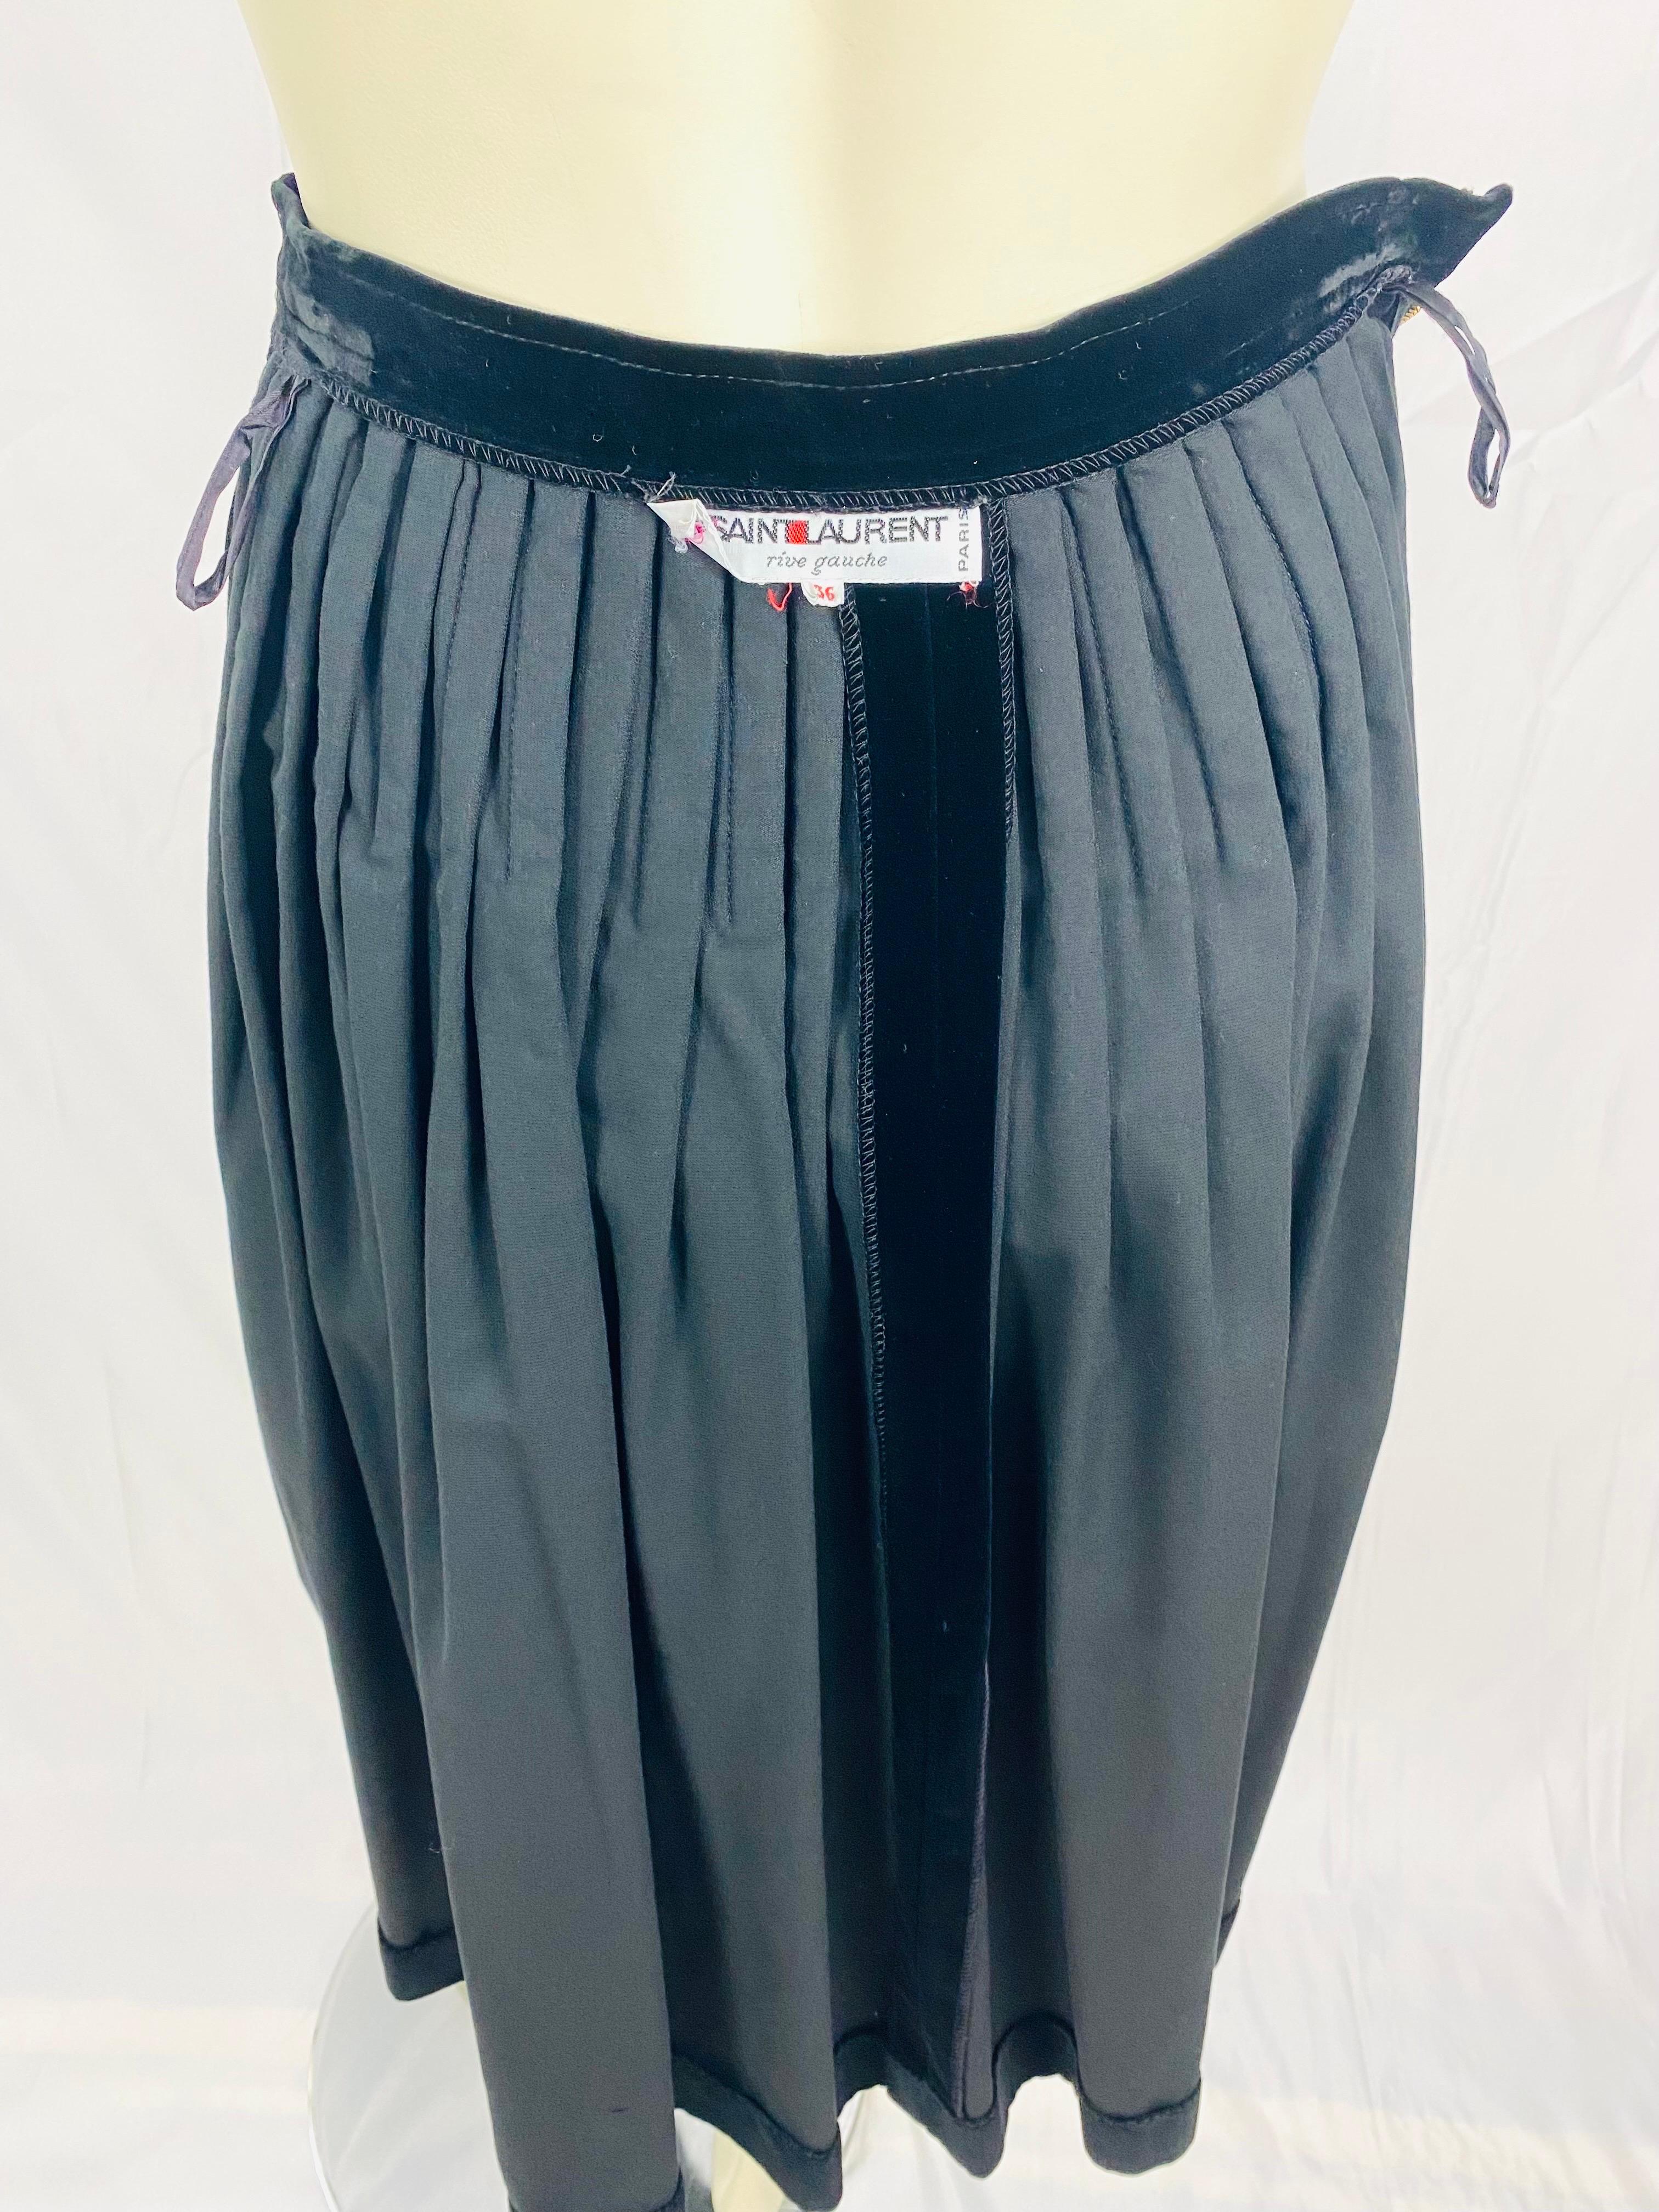 Vintage Yves saint laurent evening skirt from 1970 in black velvet For Sale 2